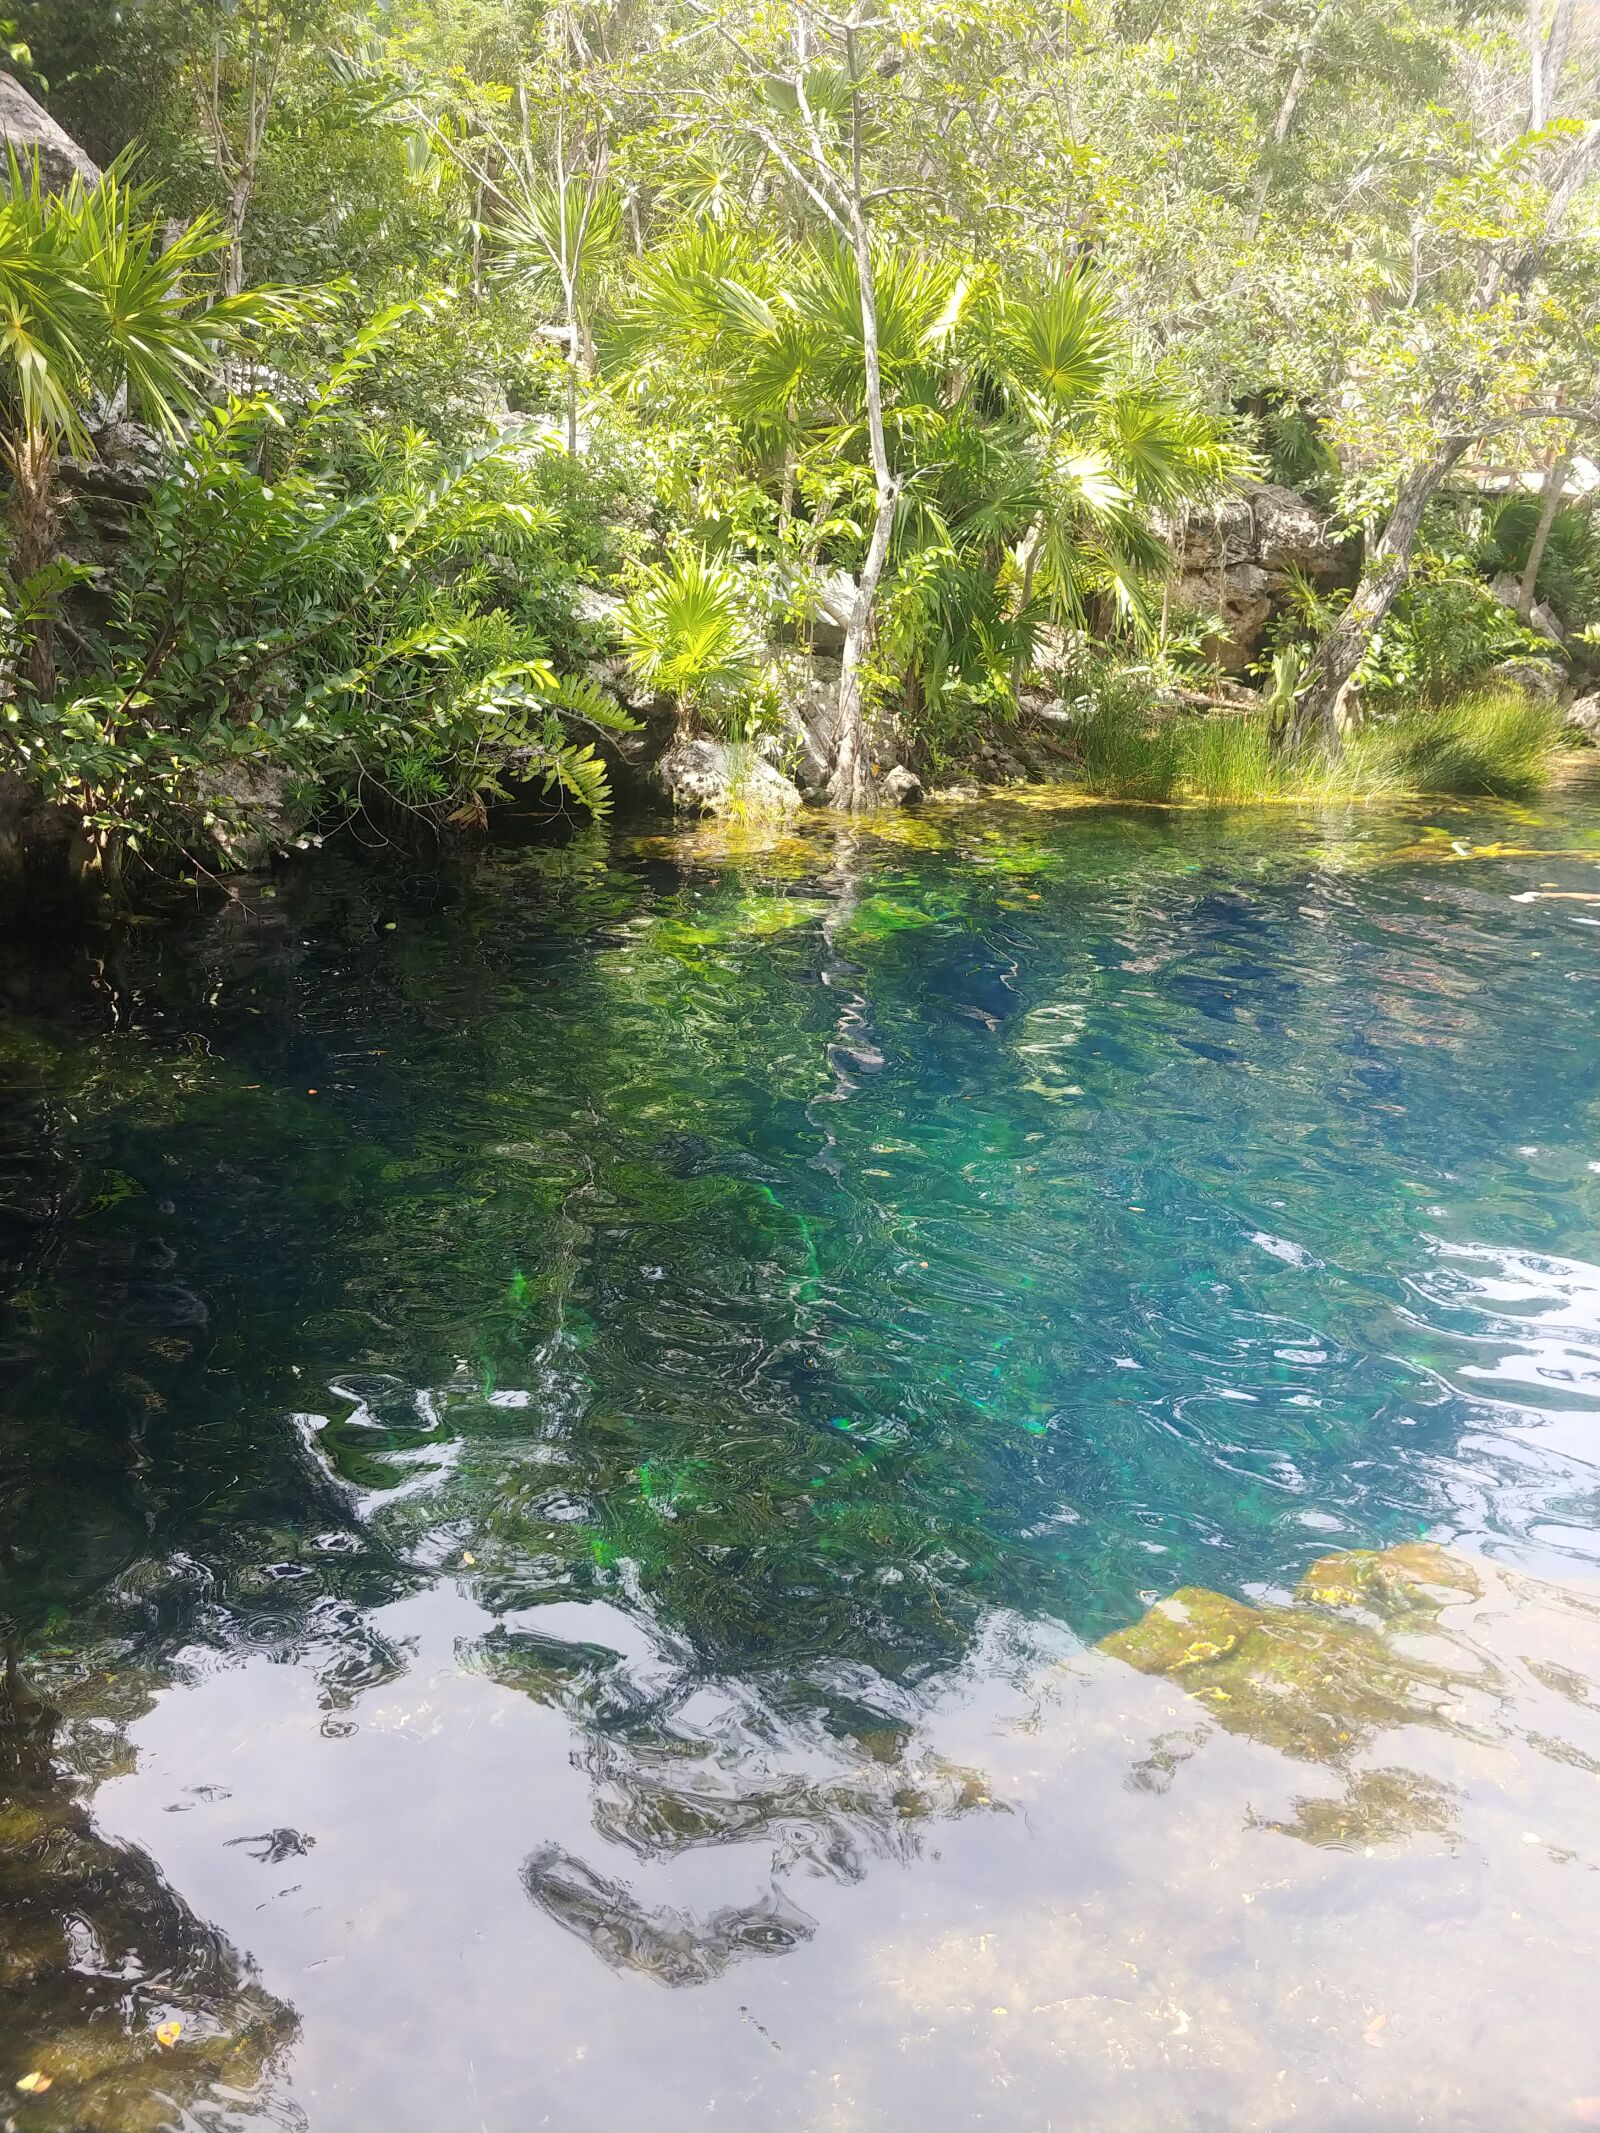 LG V30 sample photo. Cenote, mexico, jungle photography